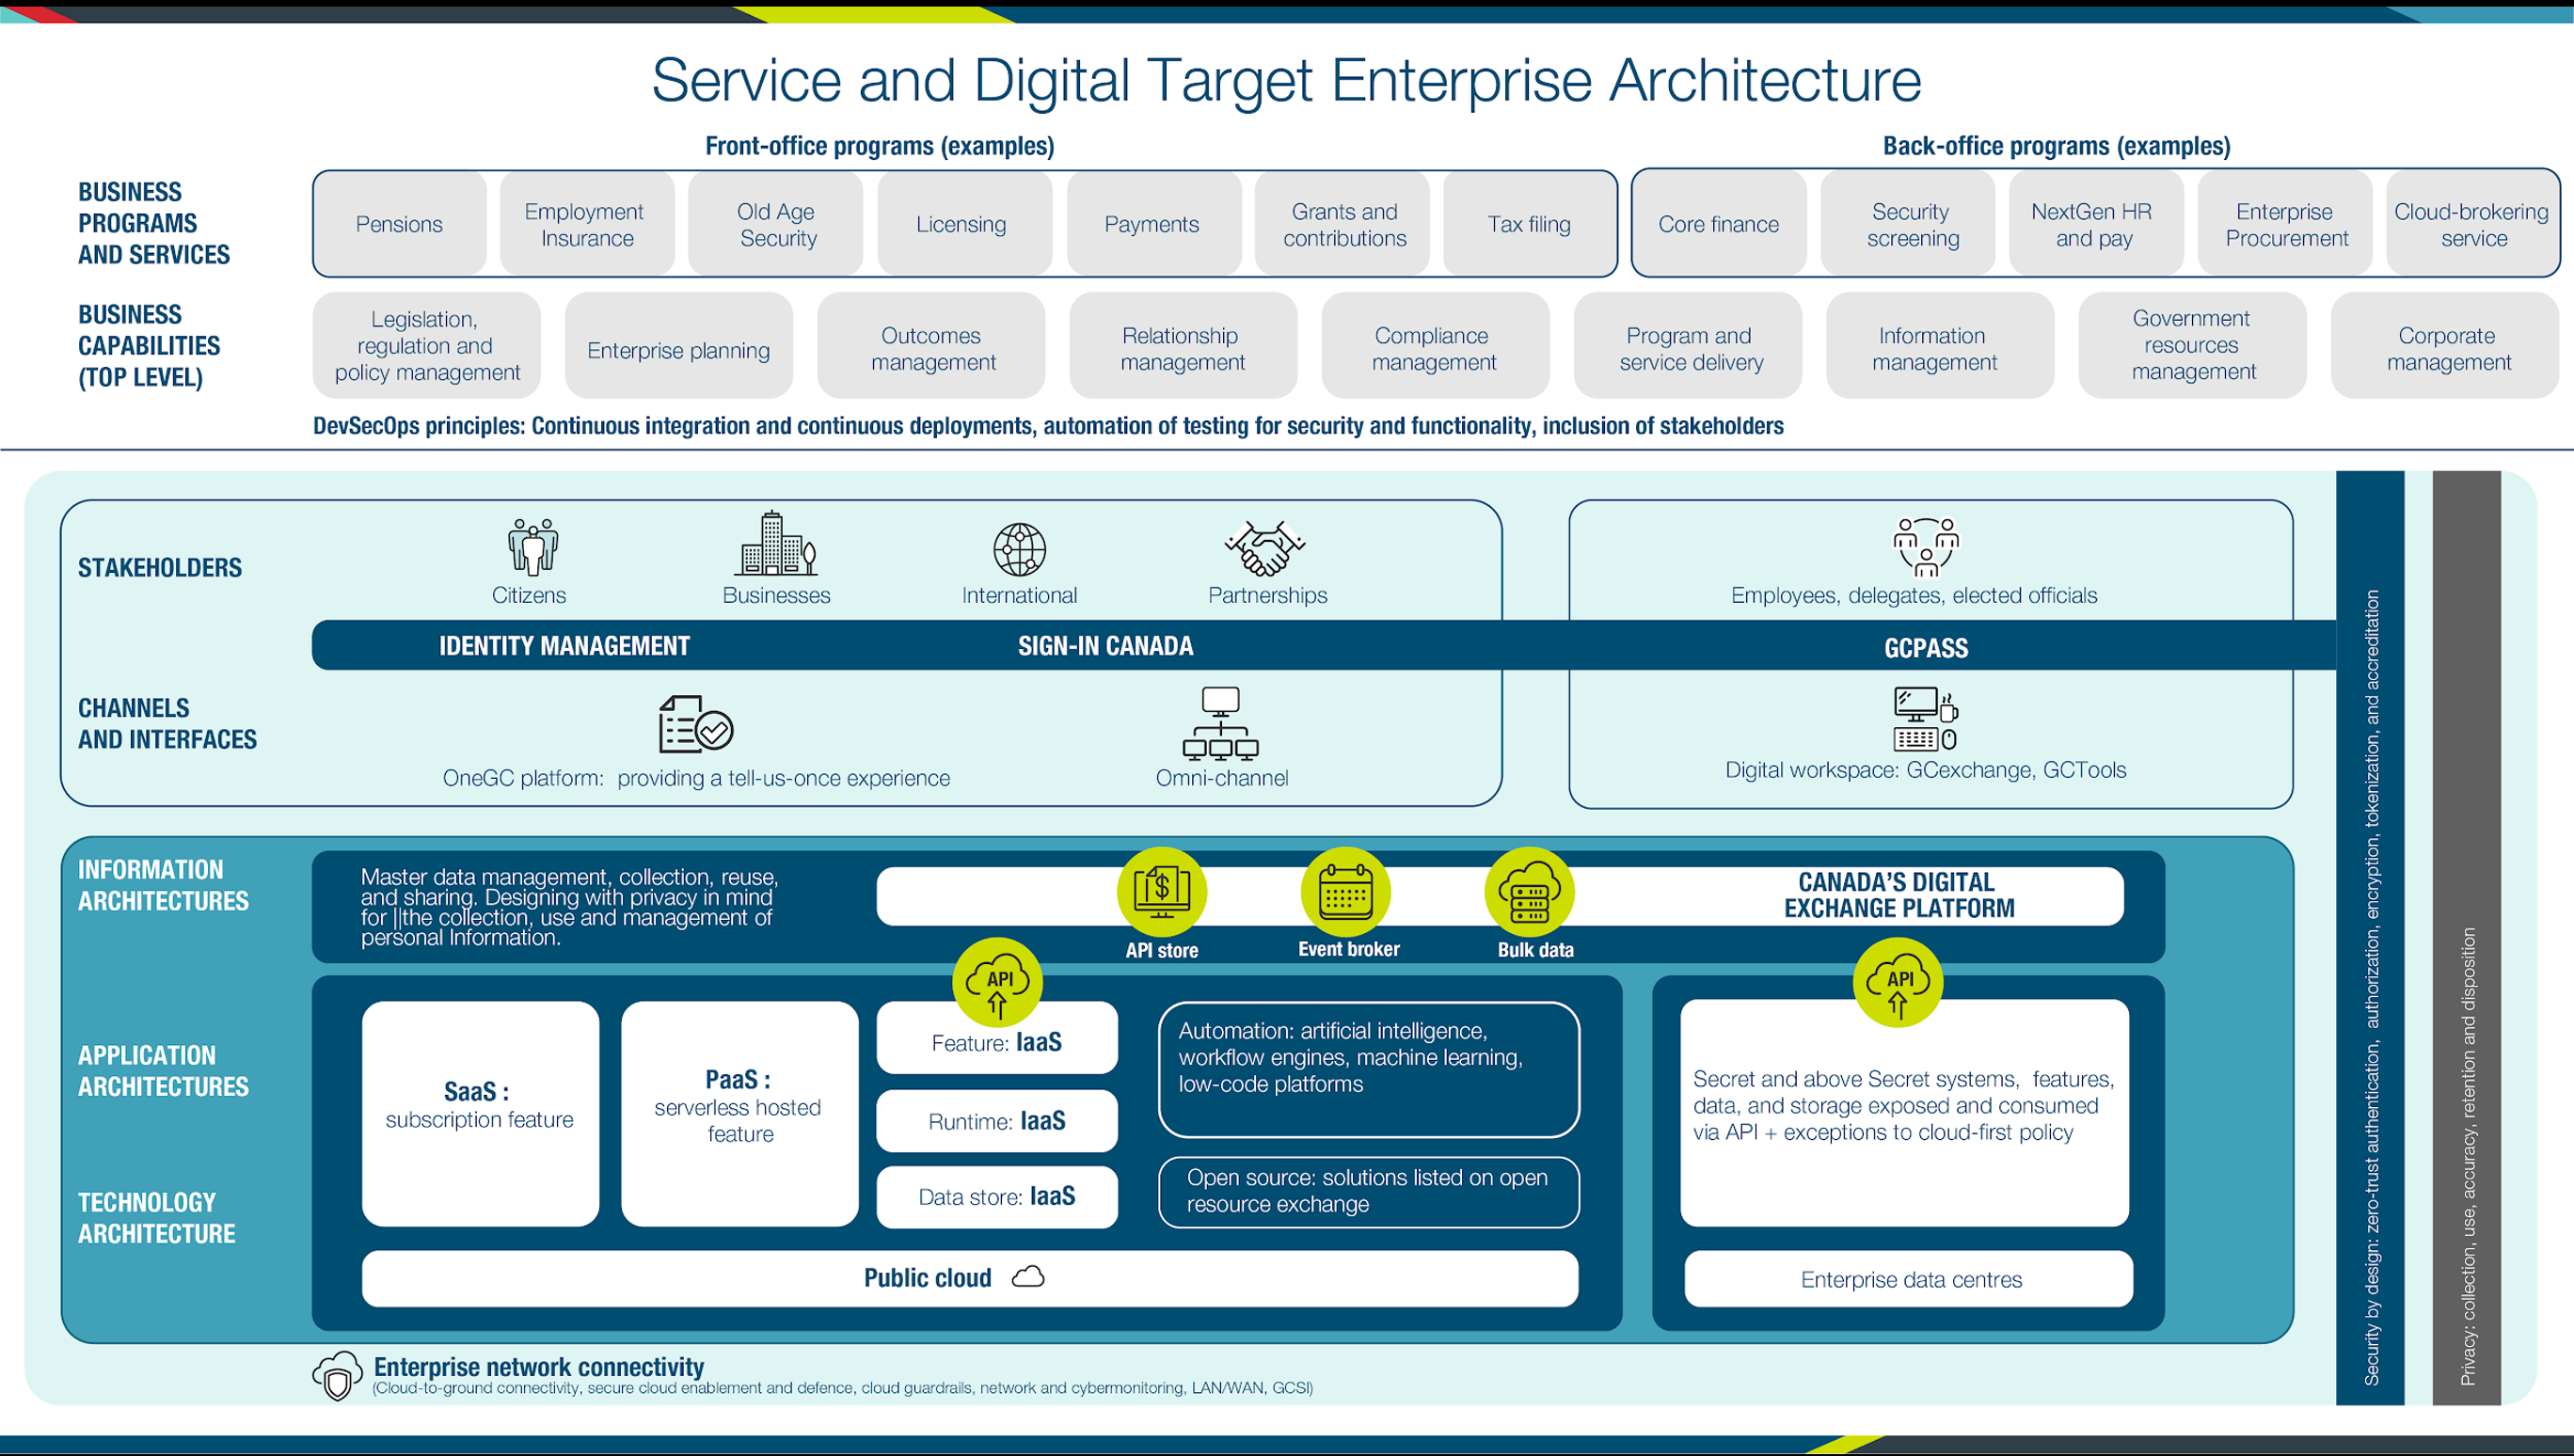 Architecture intégrée cible des services et du numérique